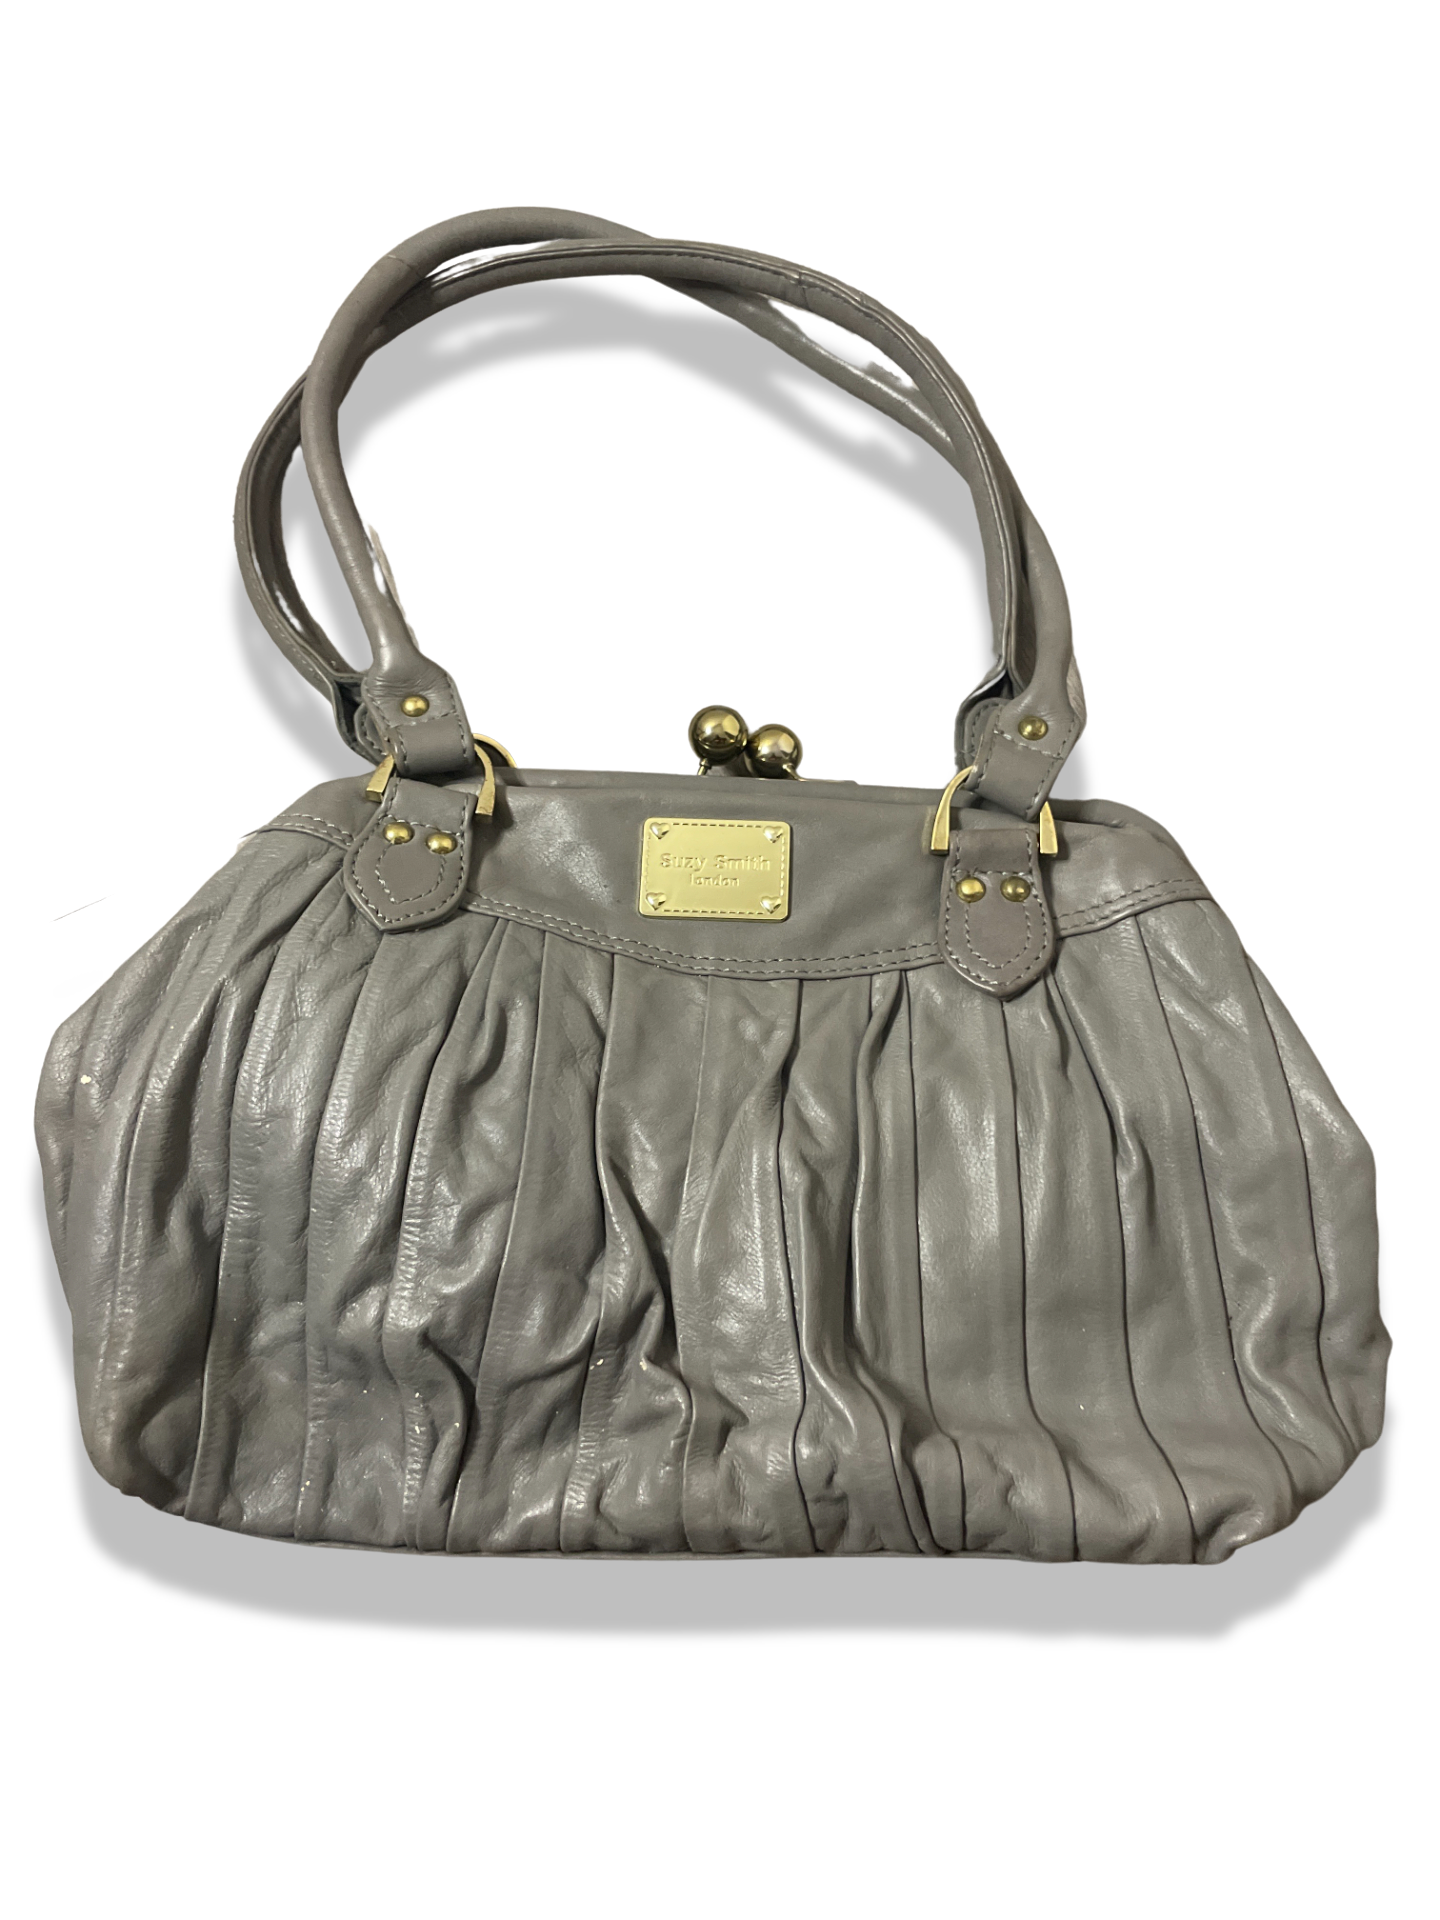 Rachels Closet Vintage y2k suzy smith miu miu grey leather handbags